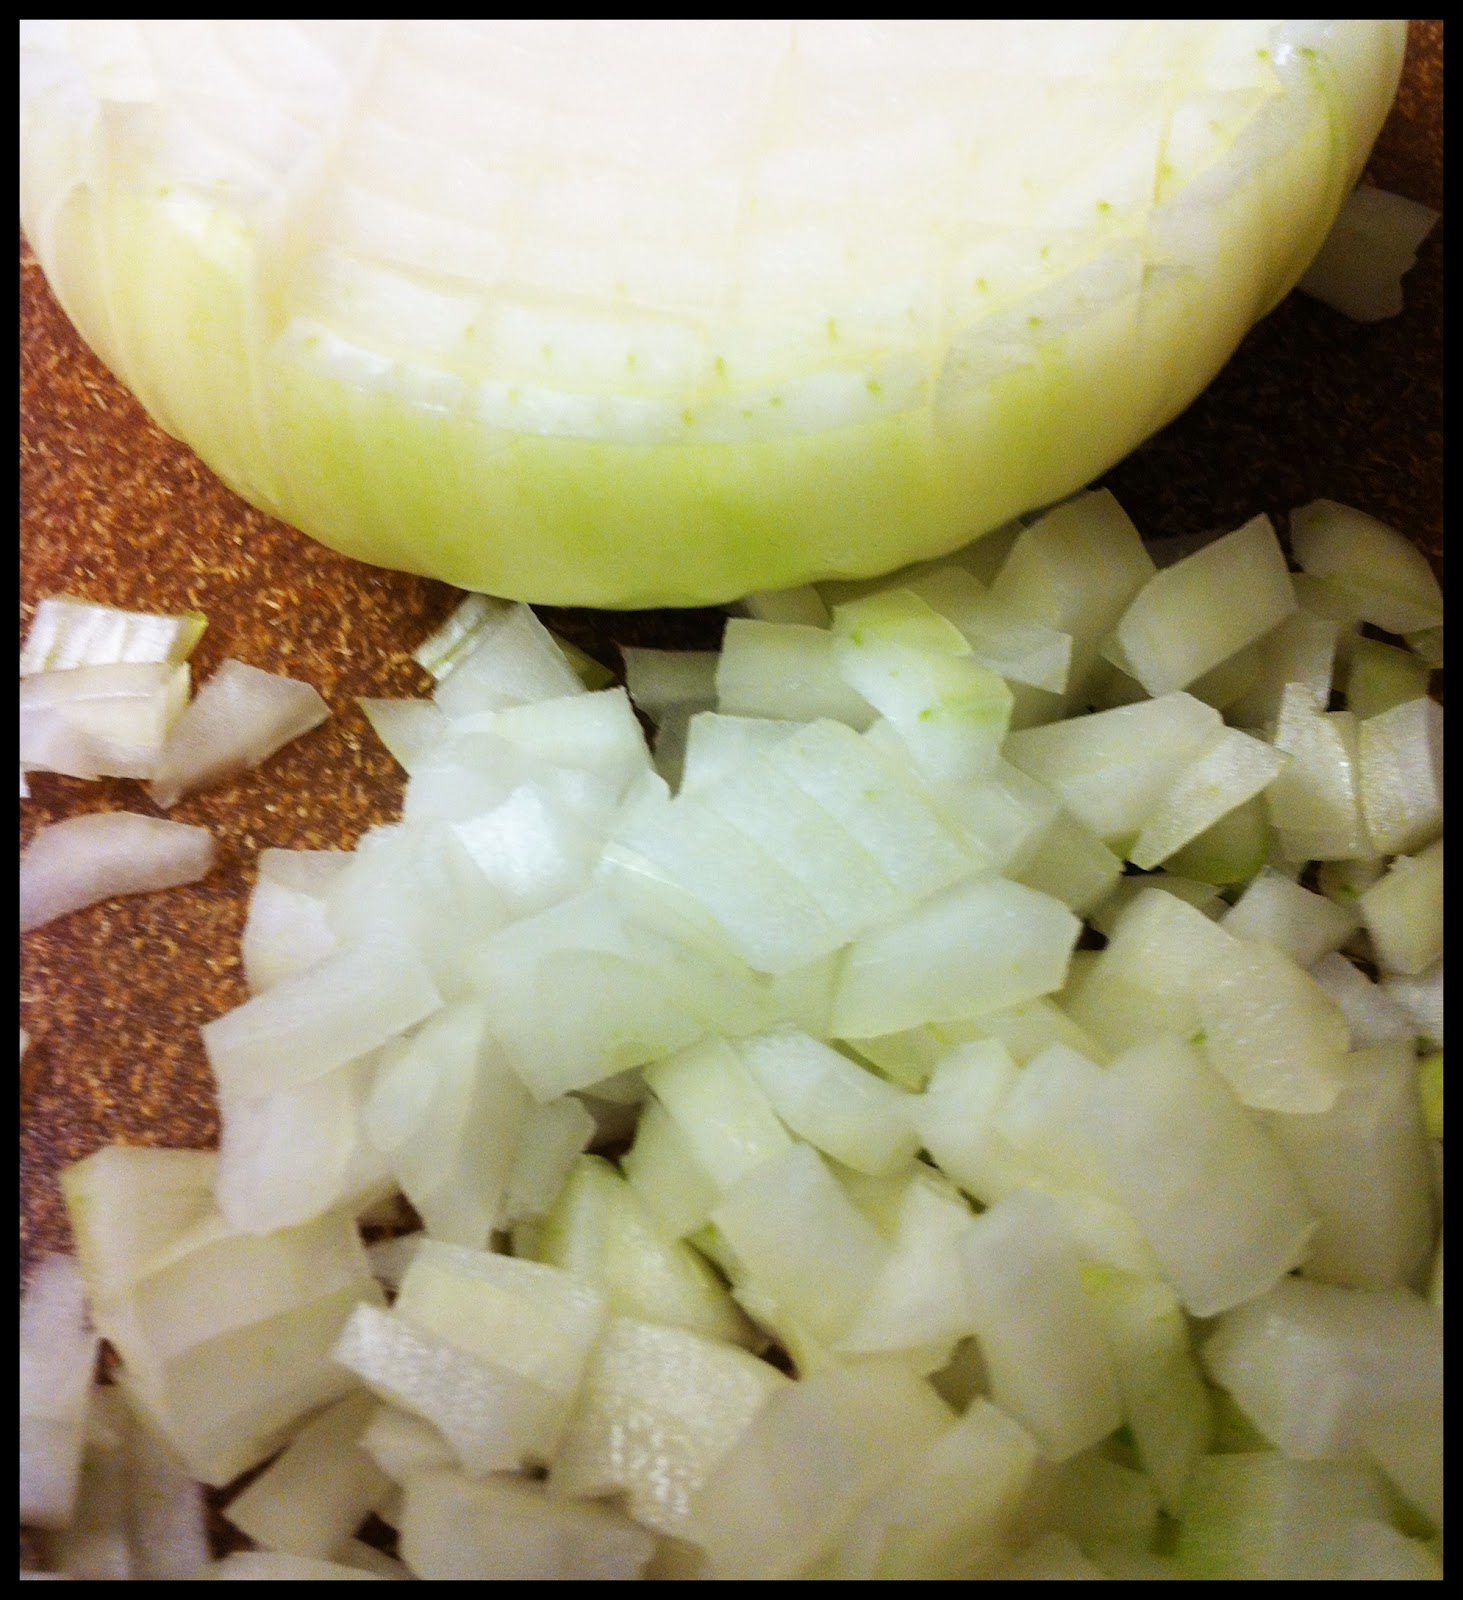 http://4.bp.blogspot.com/-swwBJkvhdaQ/TzGdEh2PghI/AAAAAAAAFUE/AfTxjST2Izk/s1600/how+to+cut+an+onion.JPG